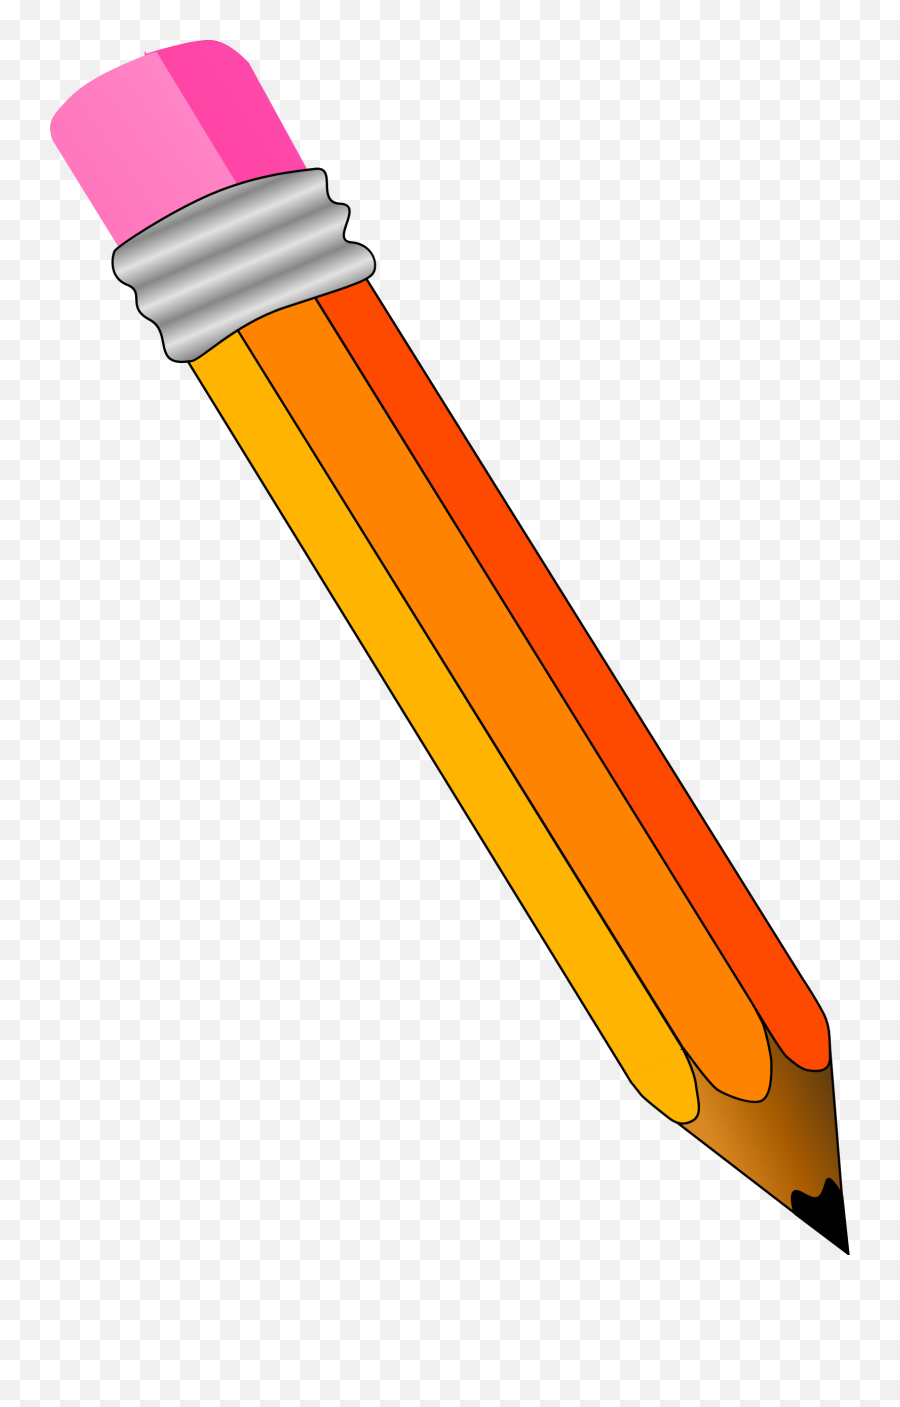 Pencil Clipart Png Image - Pencil Clip Art,Pencil Clip Art Png